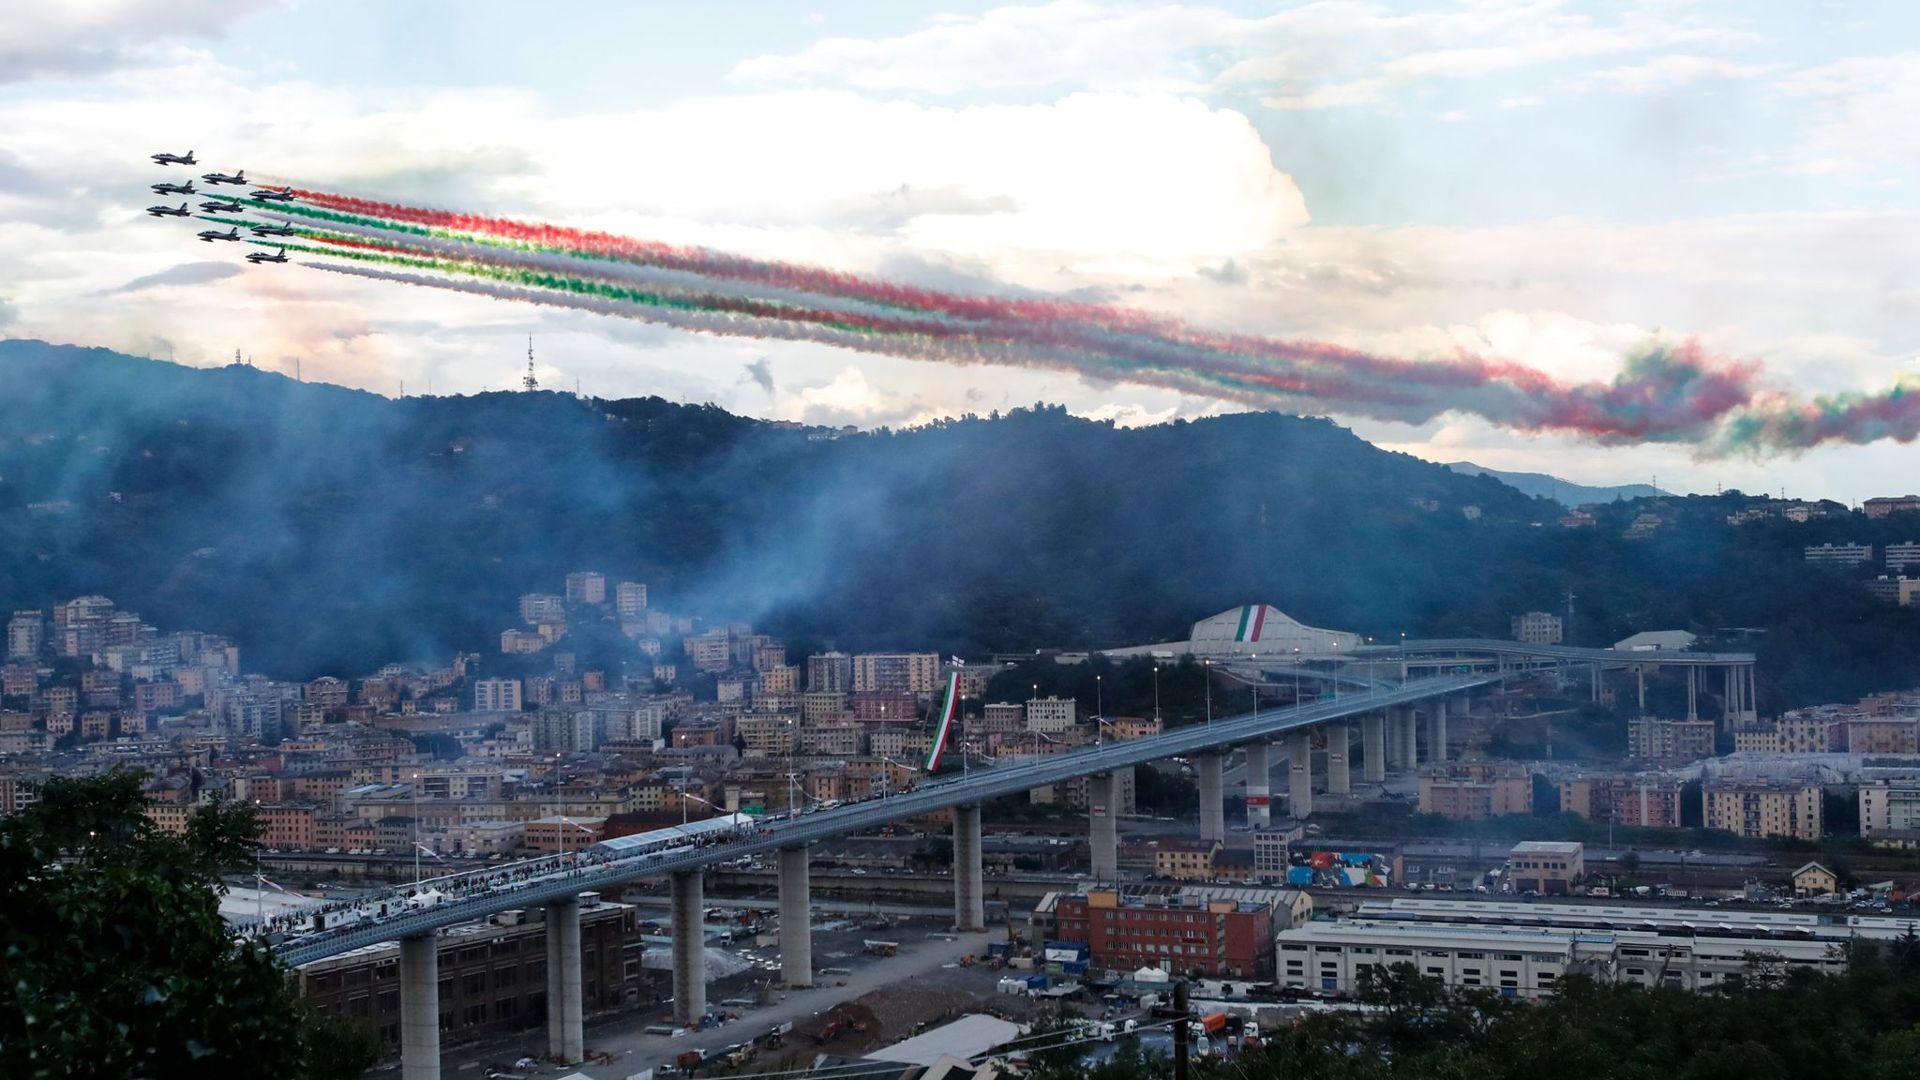 Die Kunstflugstaffel Frecce Tricolori fliegt bei der Einweihung in Genua über die neue Brücke hinweg.